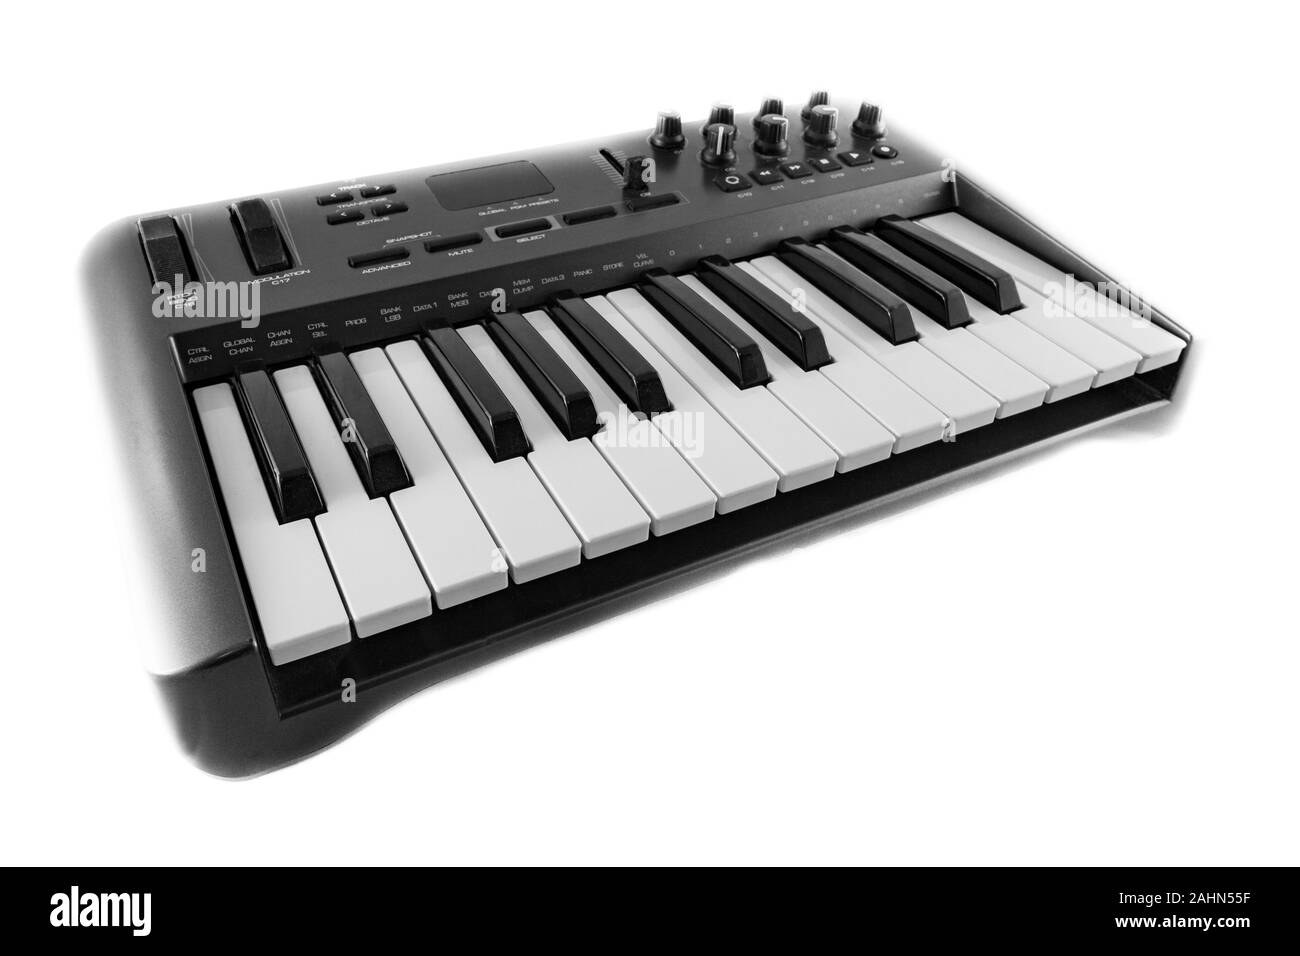 Contrôleur MIDI USB clavier synthétiseur. Tourné sur fond blanc. Banque D'Images